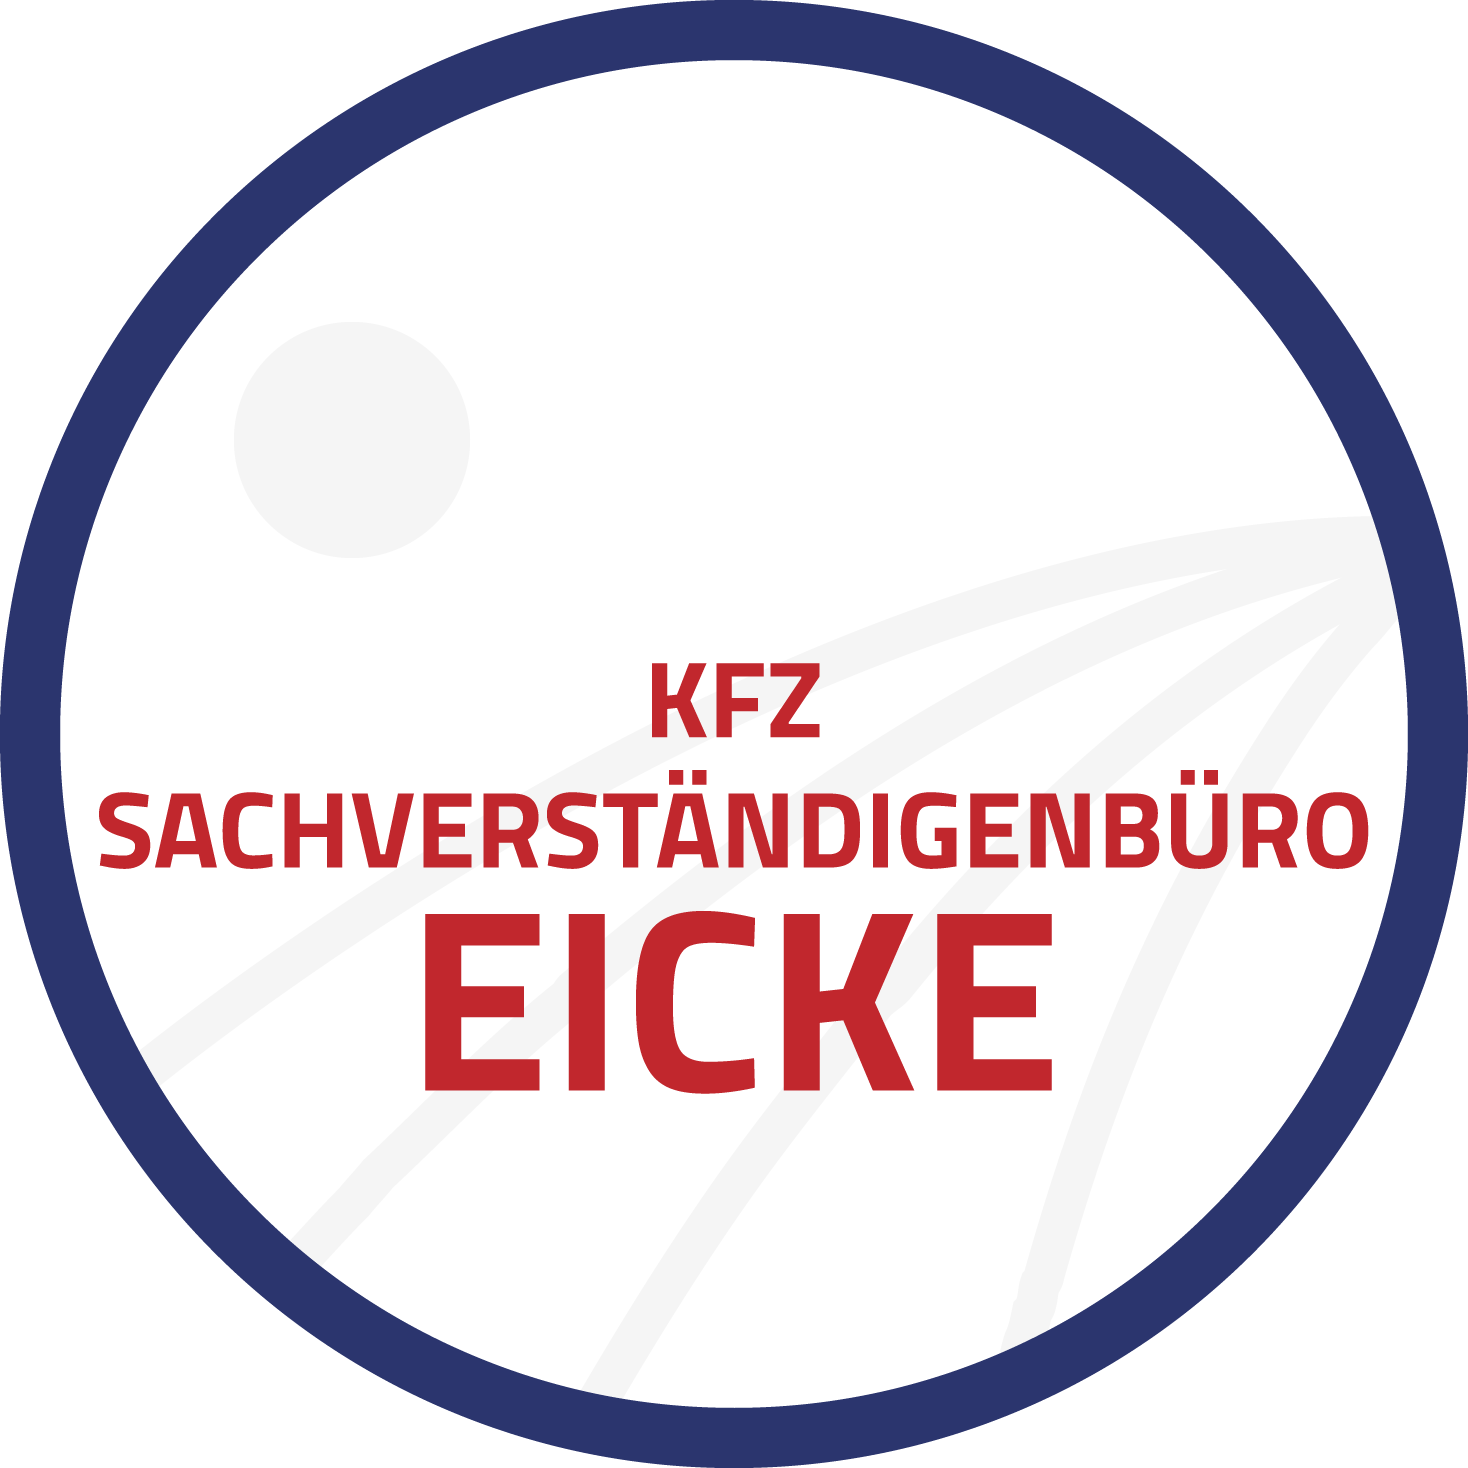 Sachverständigenbüro G. Eicke Logo